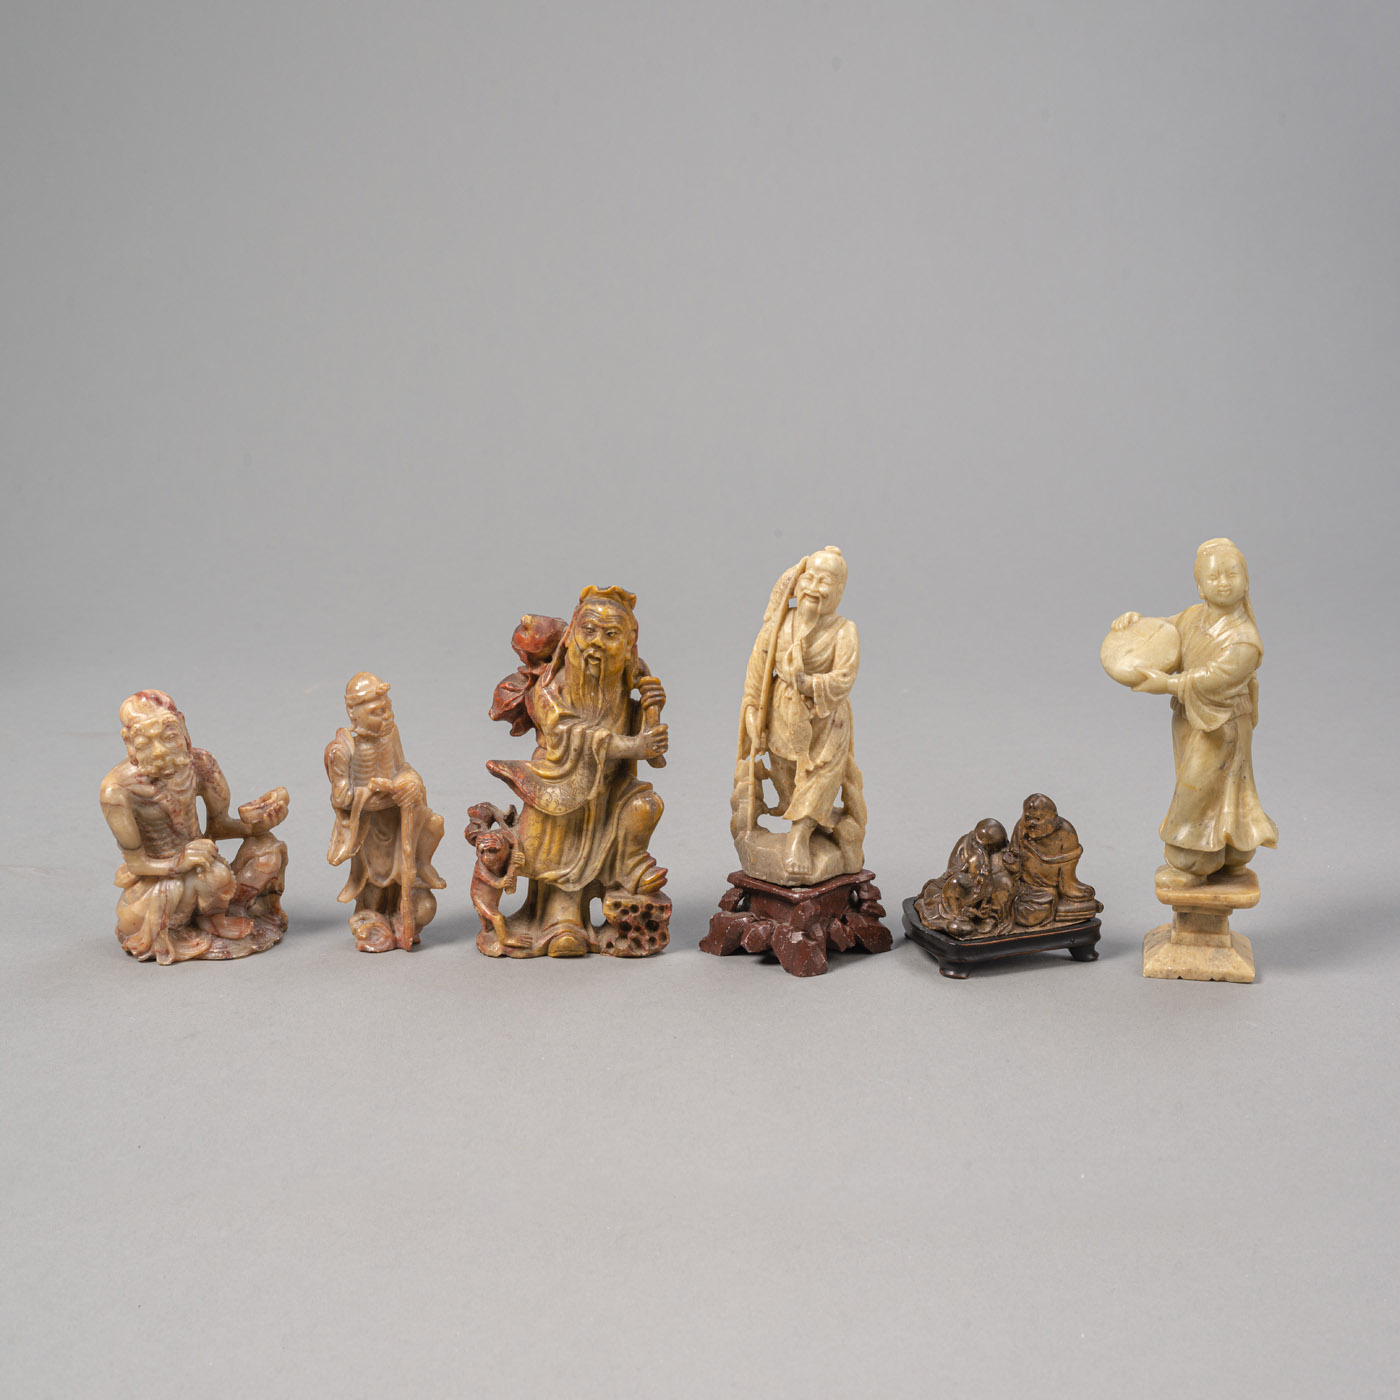 <b>Sechs Schnitzereien aus u.a. Speckstein mit Darstellungen von Unsterblichen, Mönchen und Tänzerin</b>